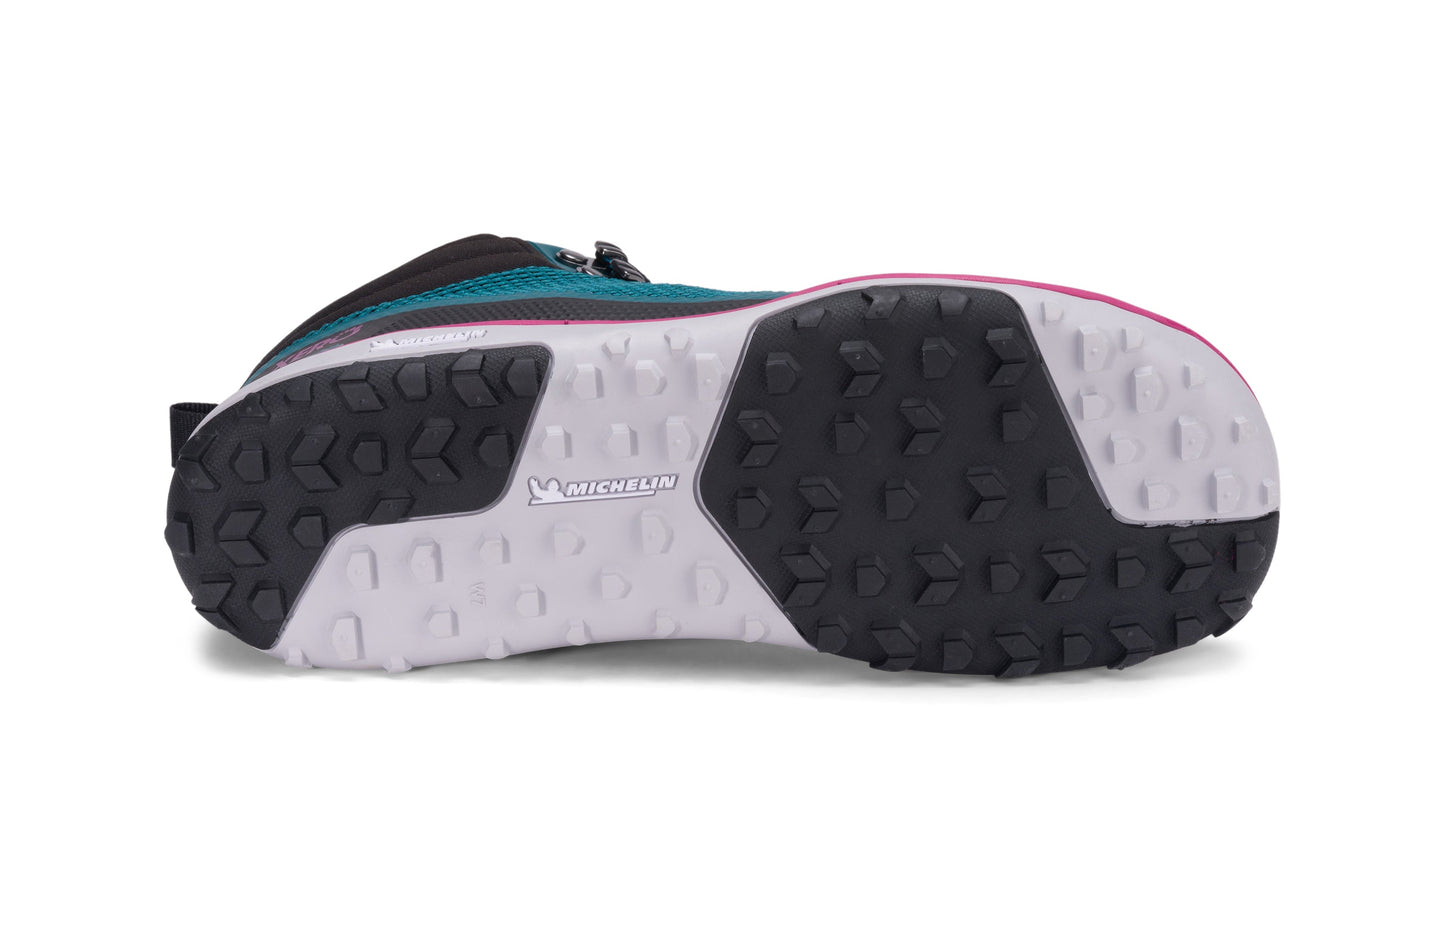 Xero Shoes Scrambler Mid Womens barfods lette vandrestøvler til kvinder i farven deep lake / fuschia, saal